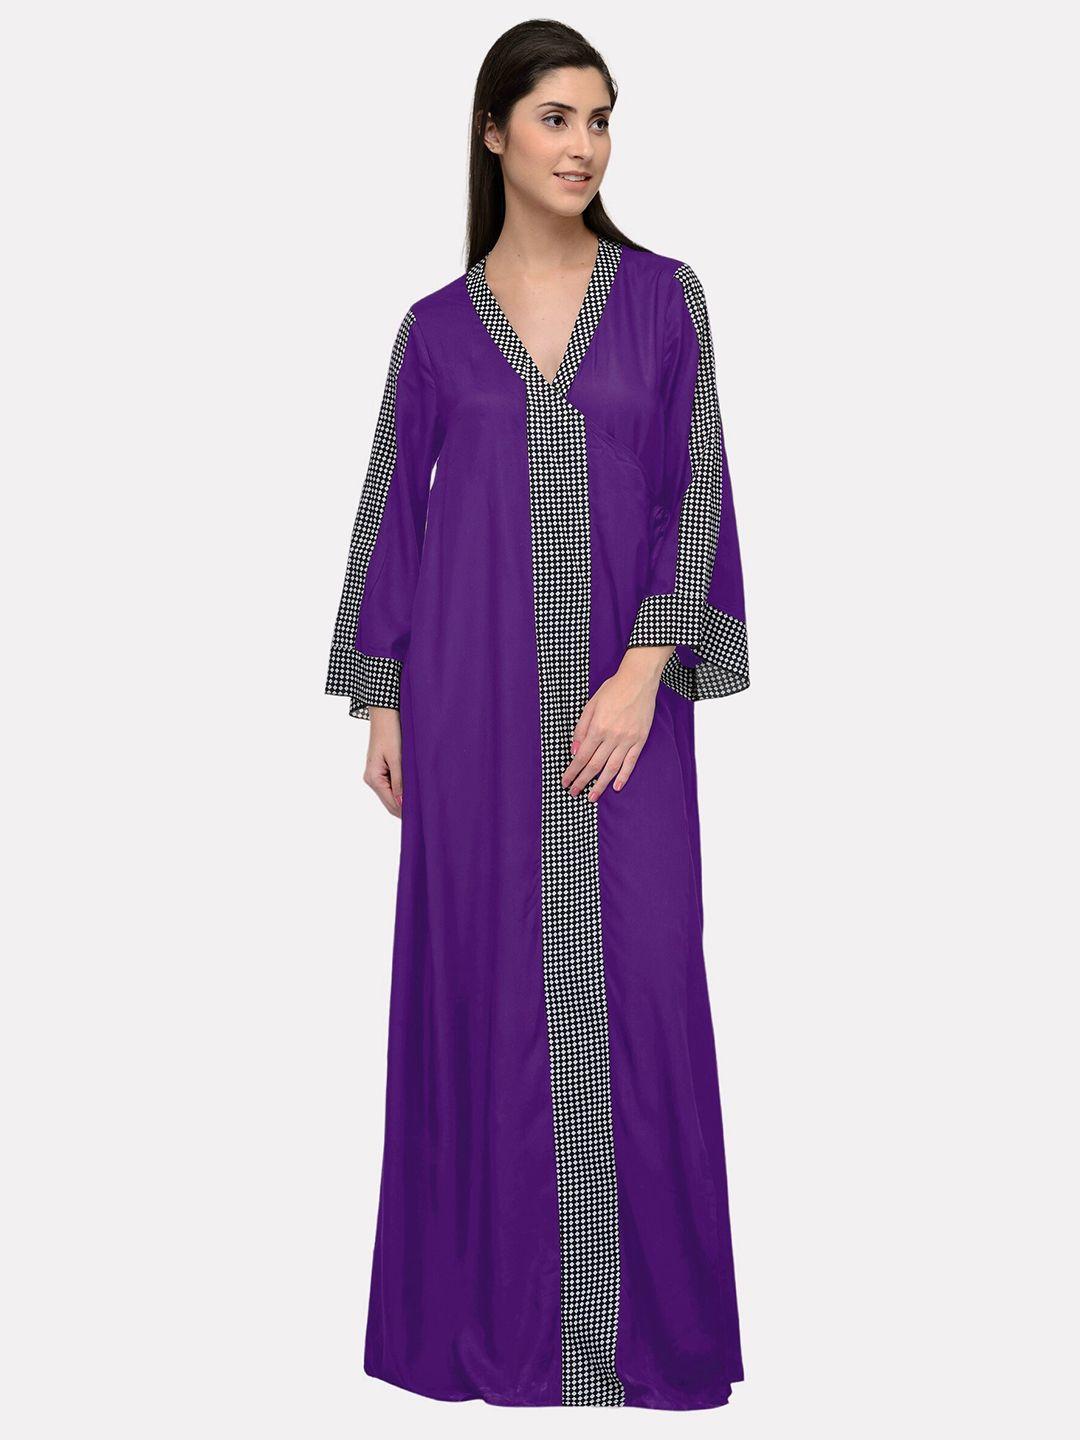 patrorna-purple-maxi-nightdress